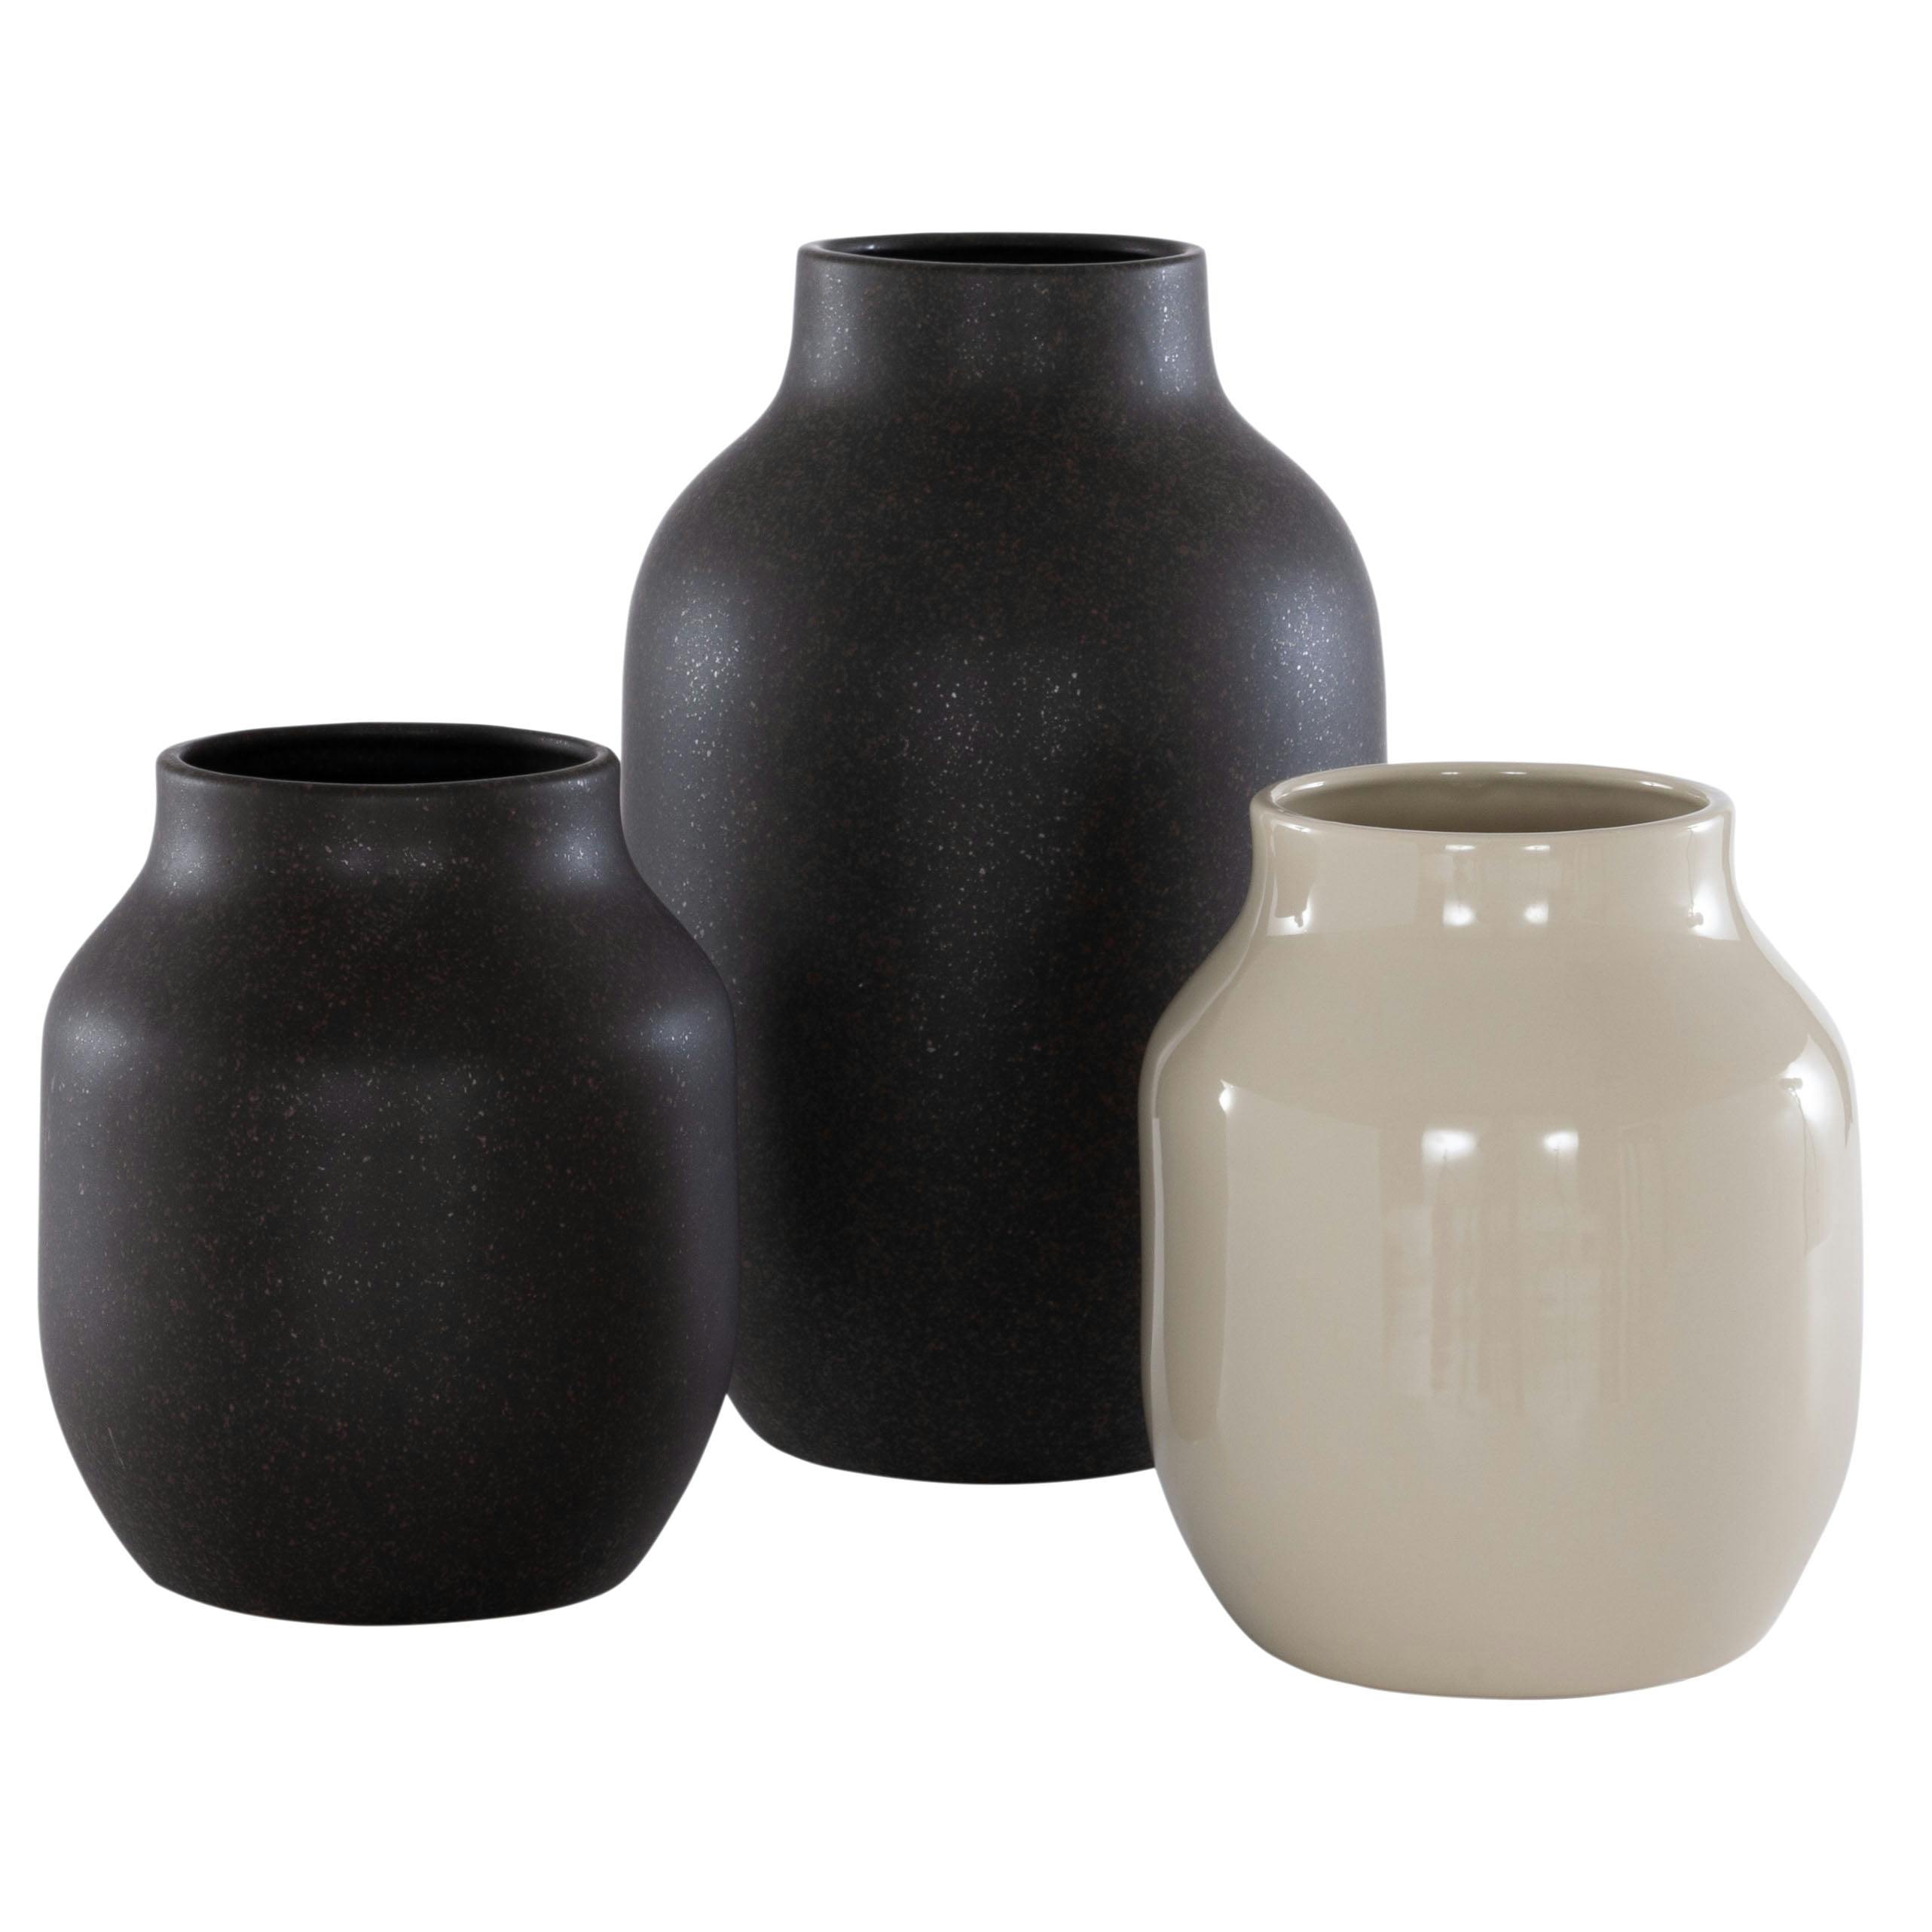 Charcoal & Beige Rustic Ceramic Vase Trio Set